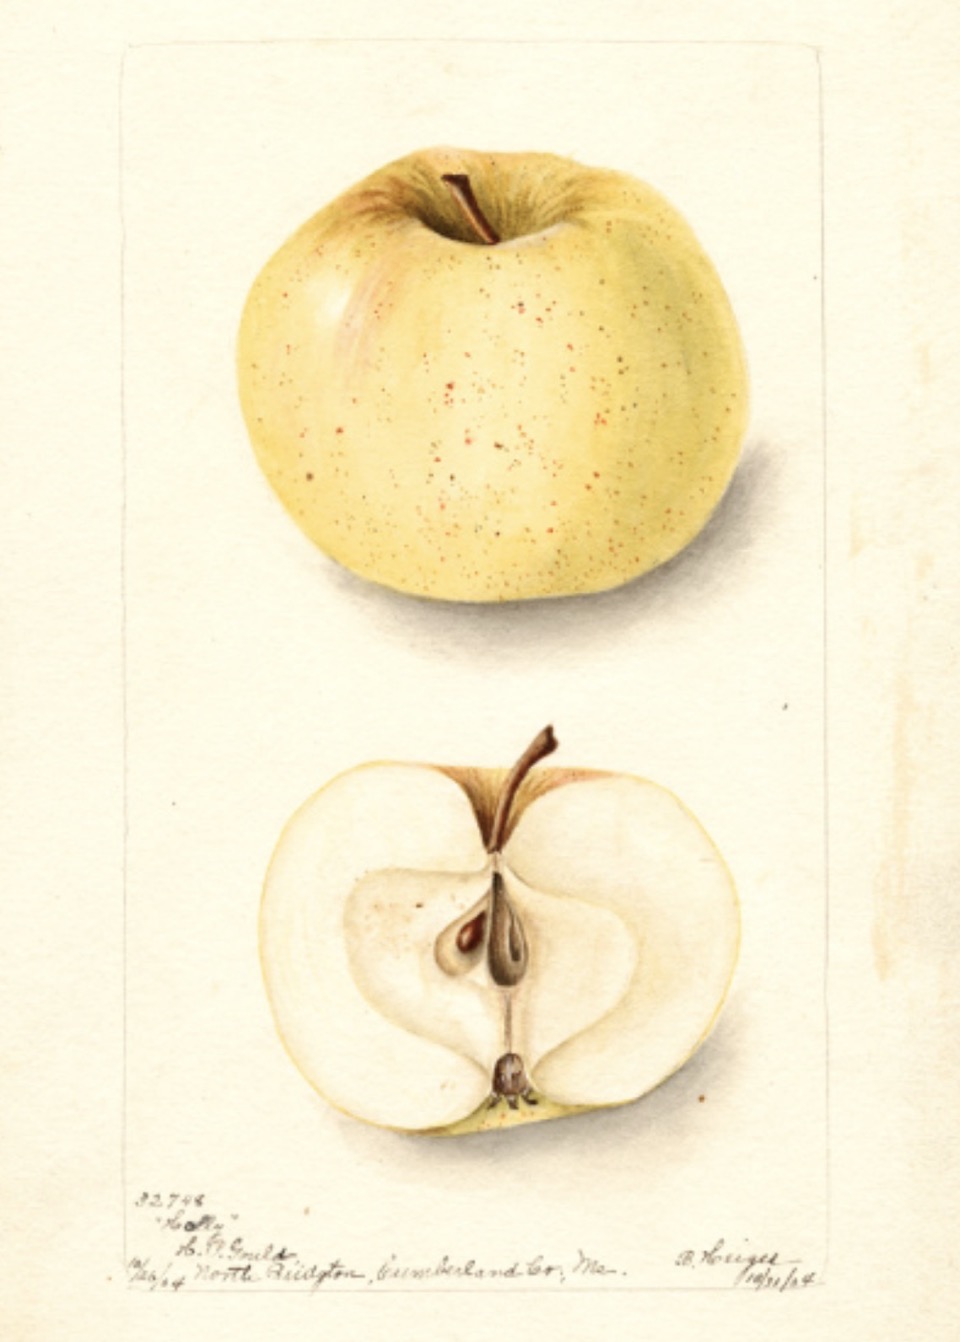 Historische Abbildung eines gelblichen und eines aufgeschnittenen Apfels; USDA